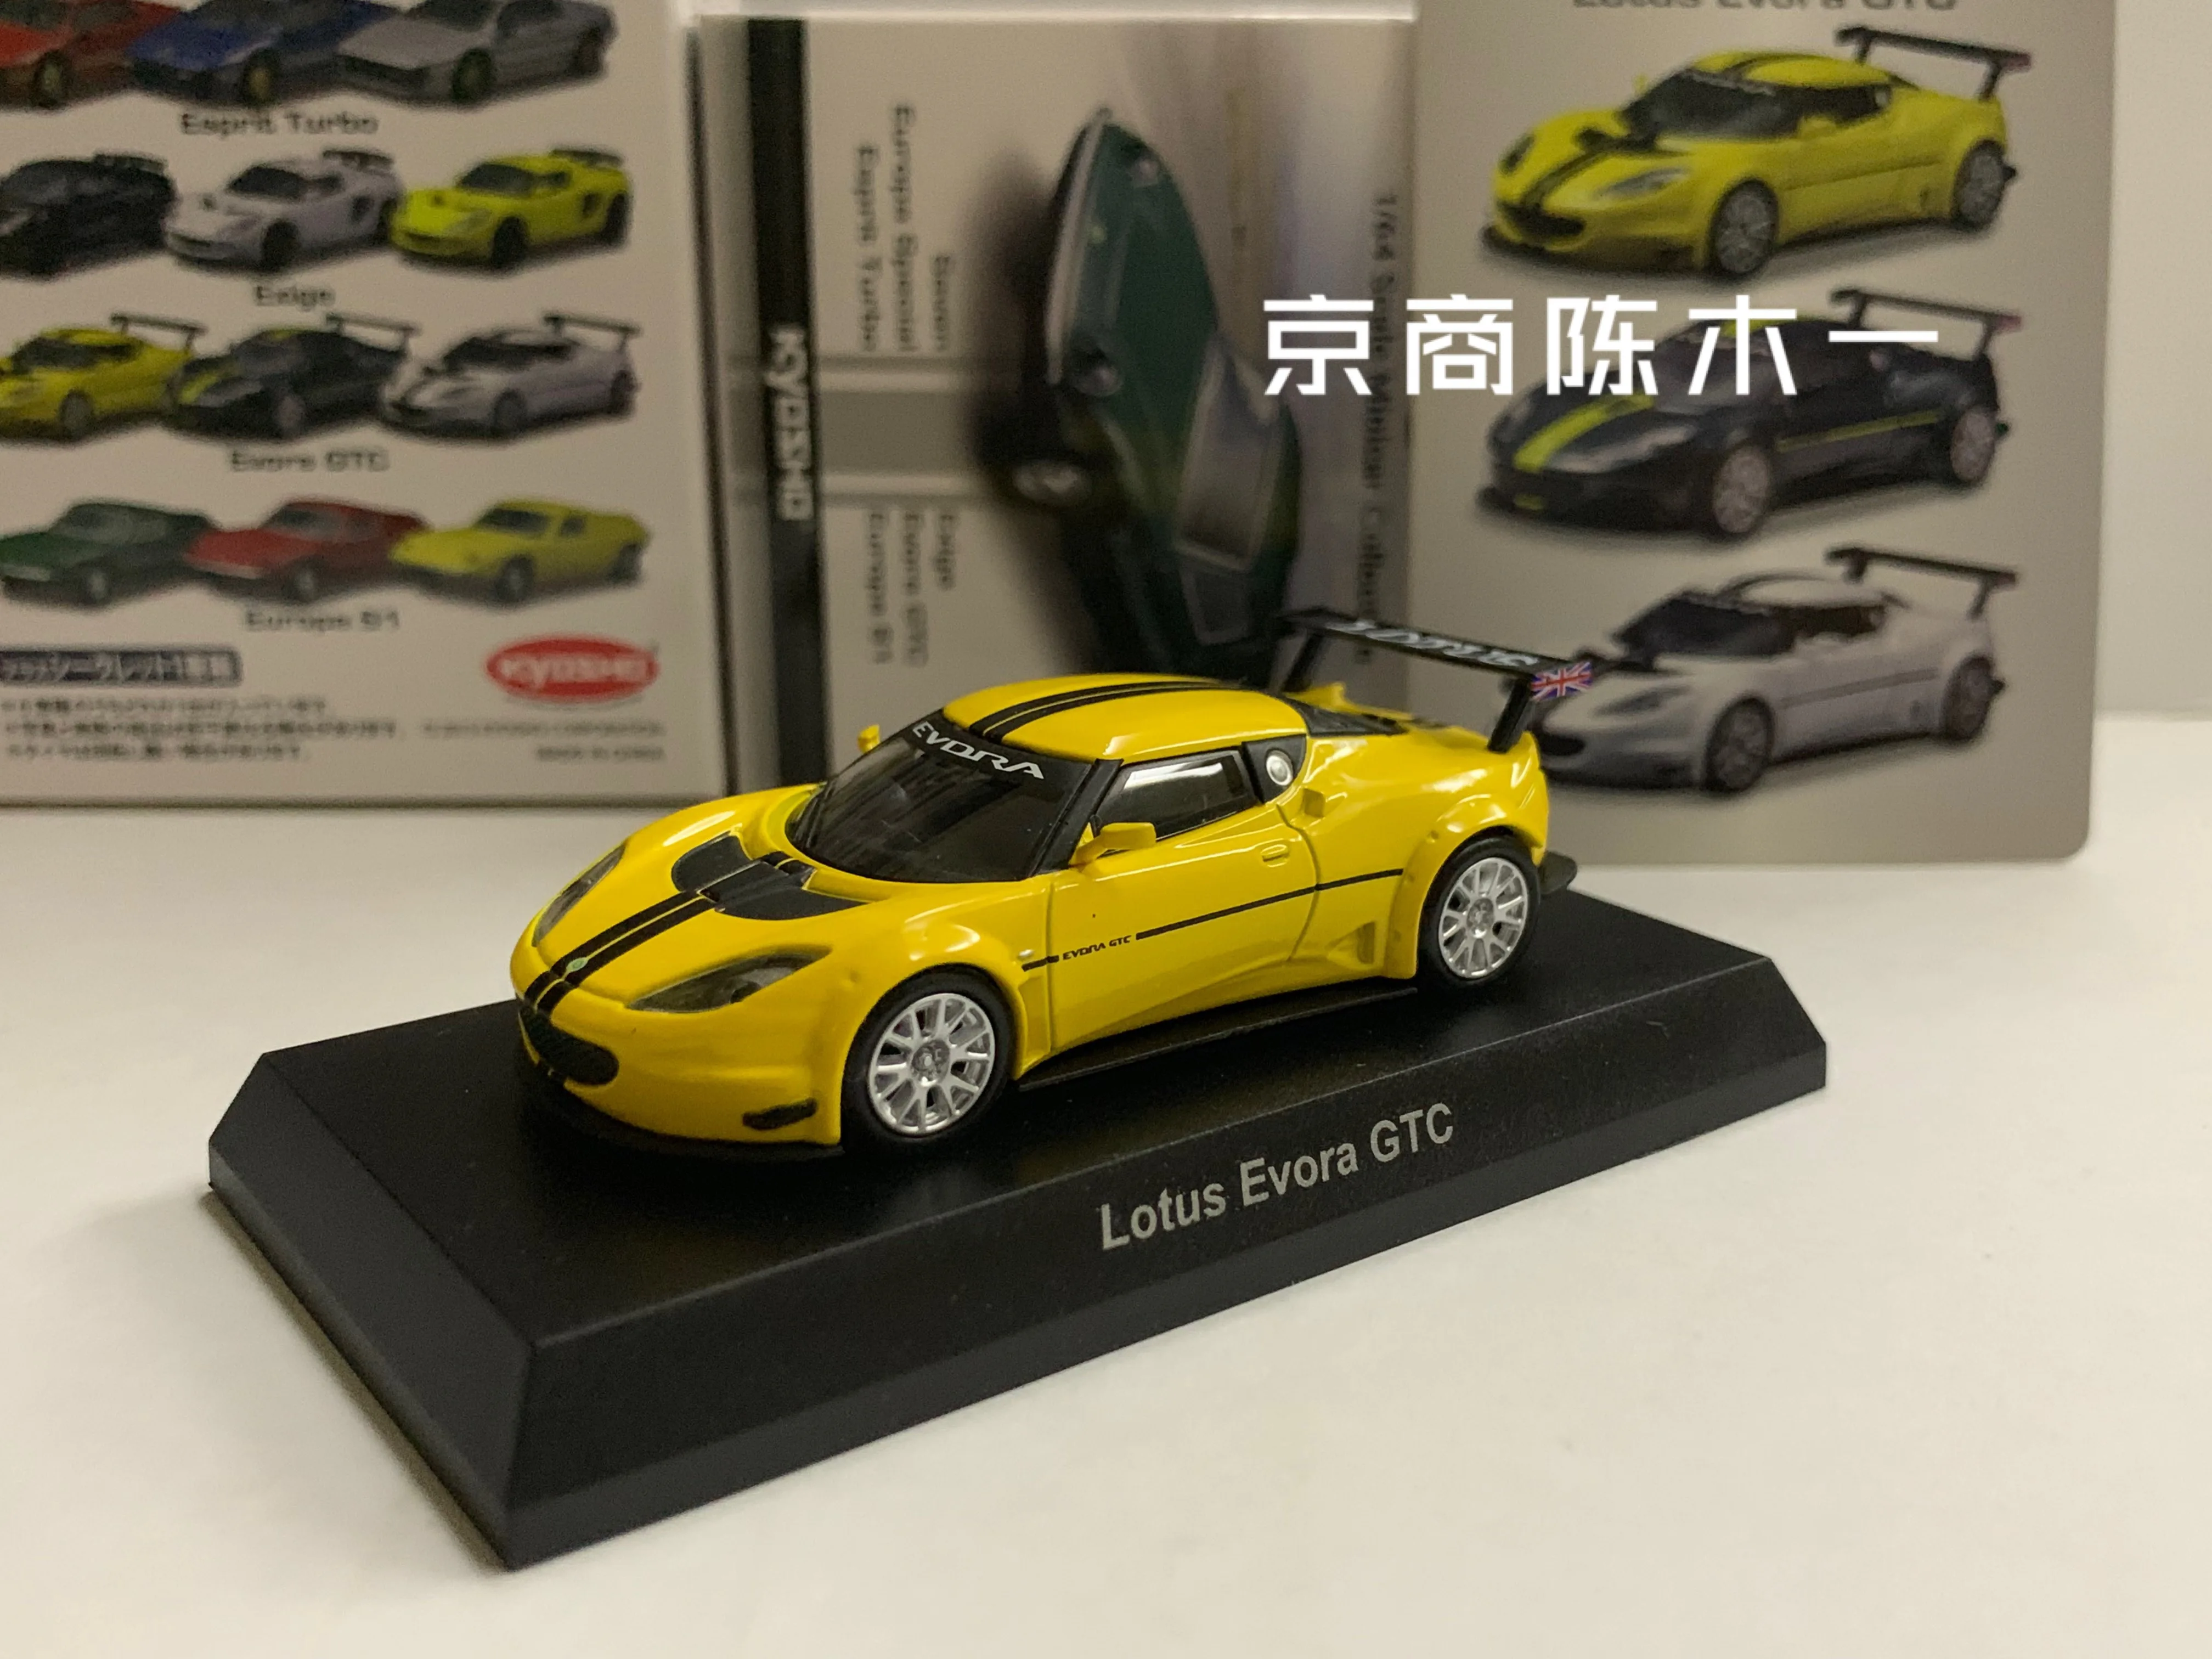 

Коллекция игрушечных моделей автомобилей KYOSHO Lotus Evora GTC из литого сплава, 1/64